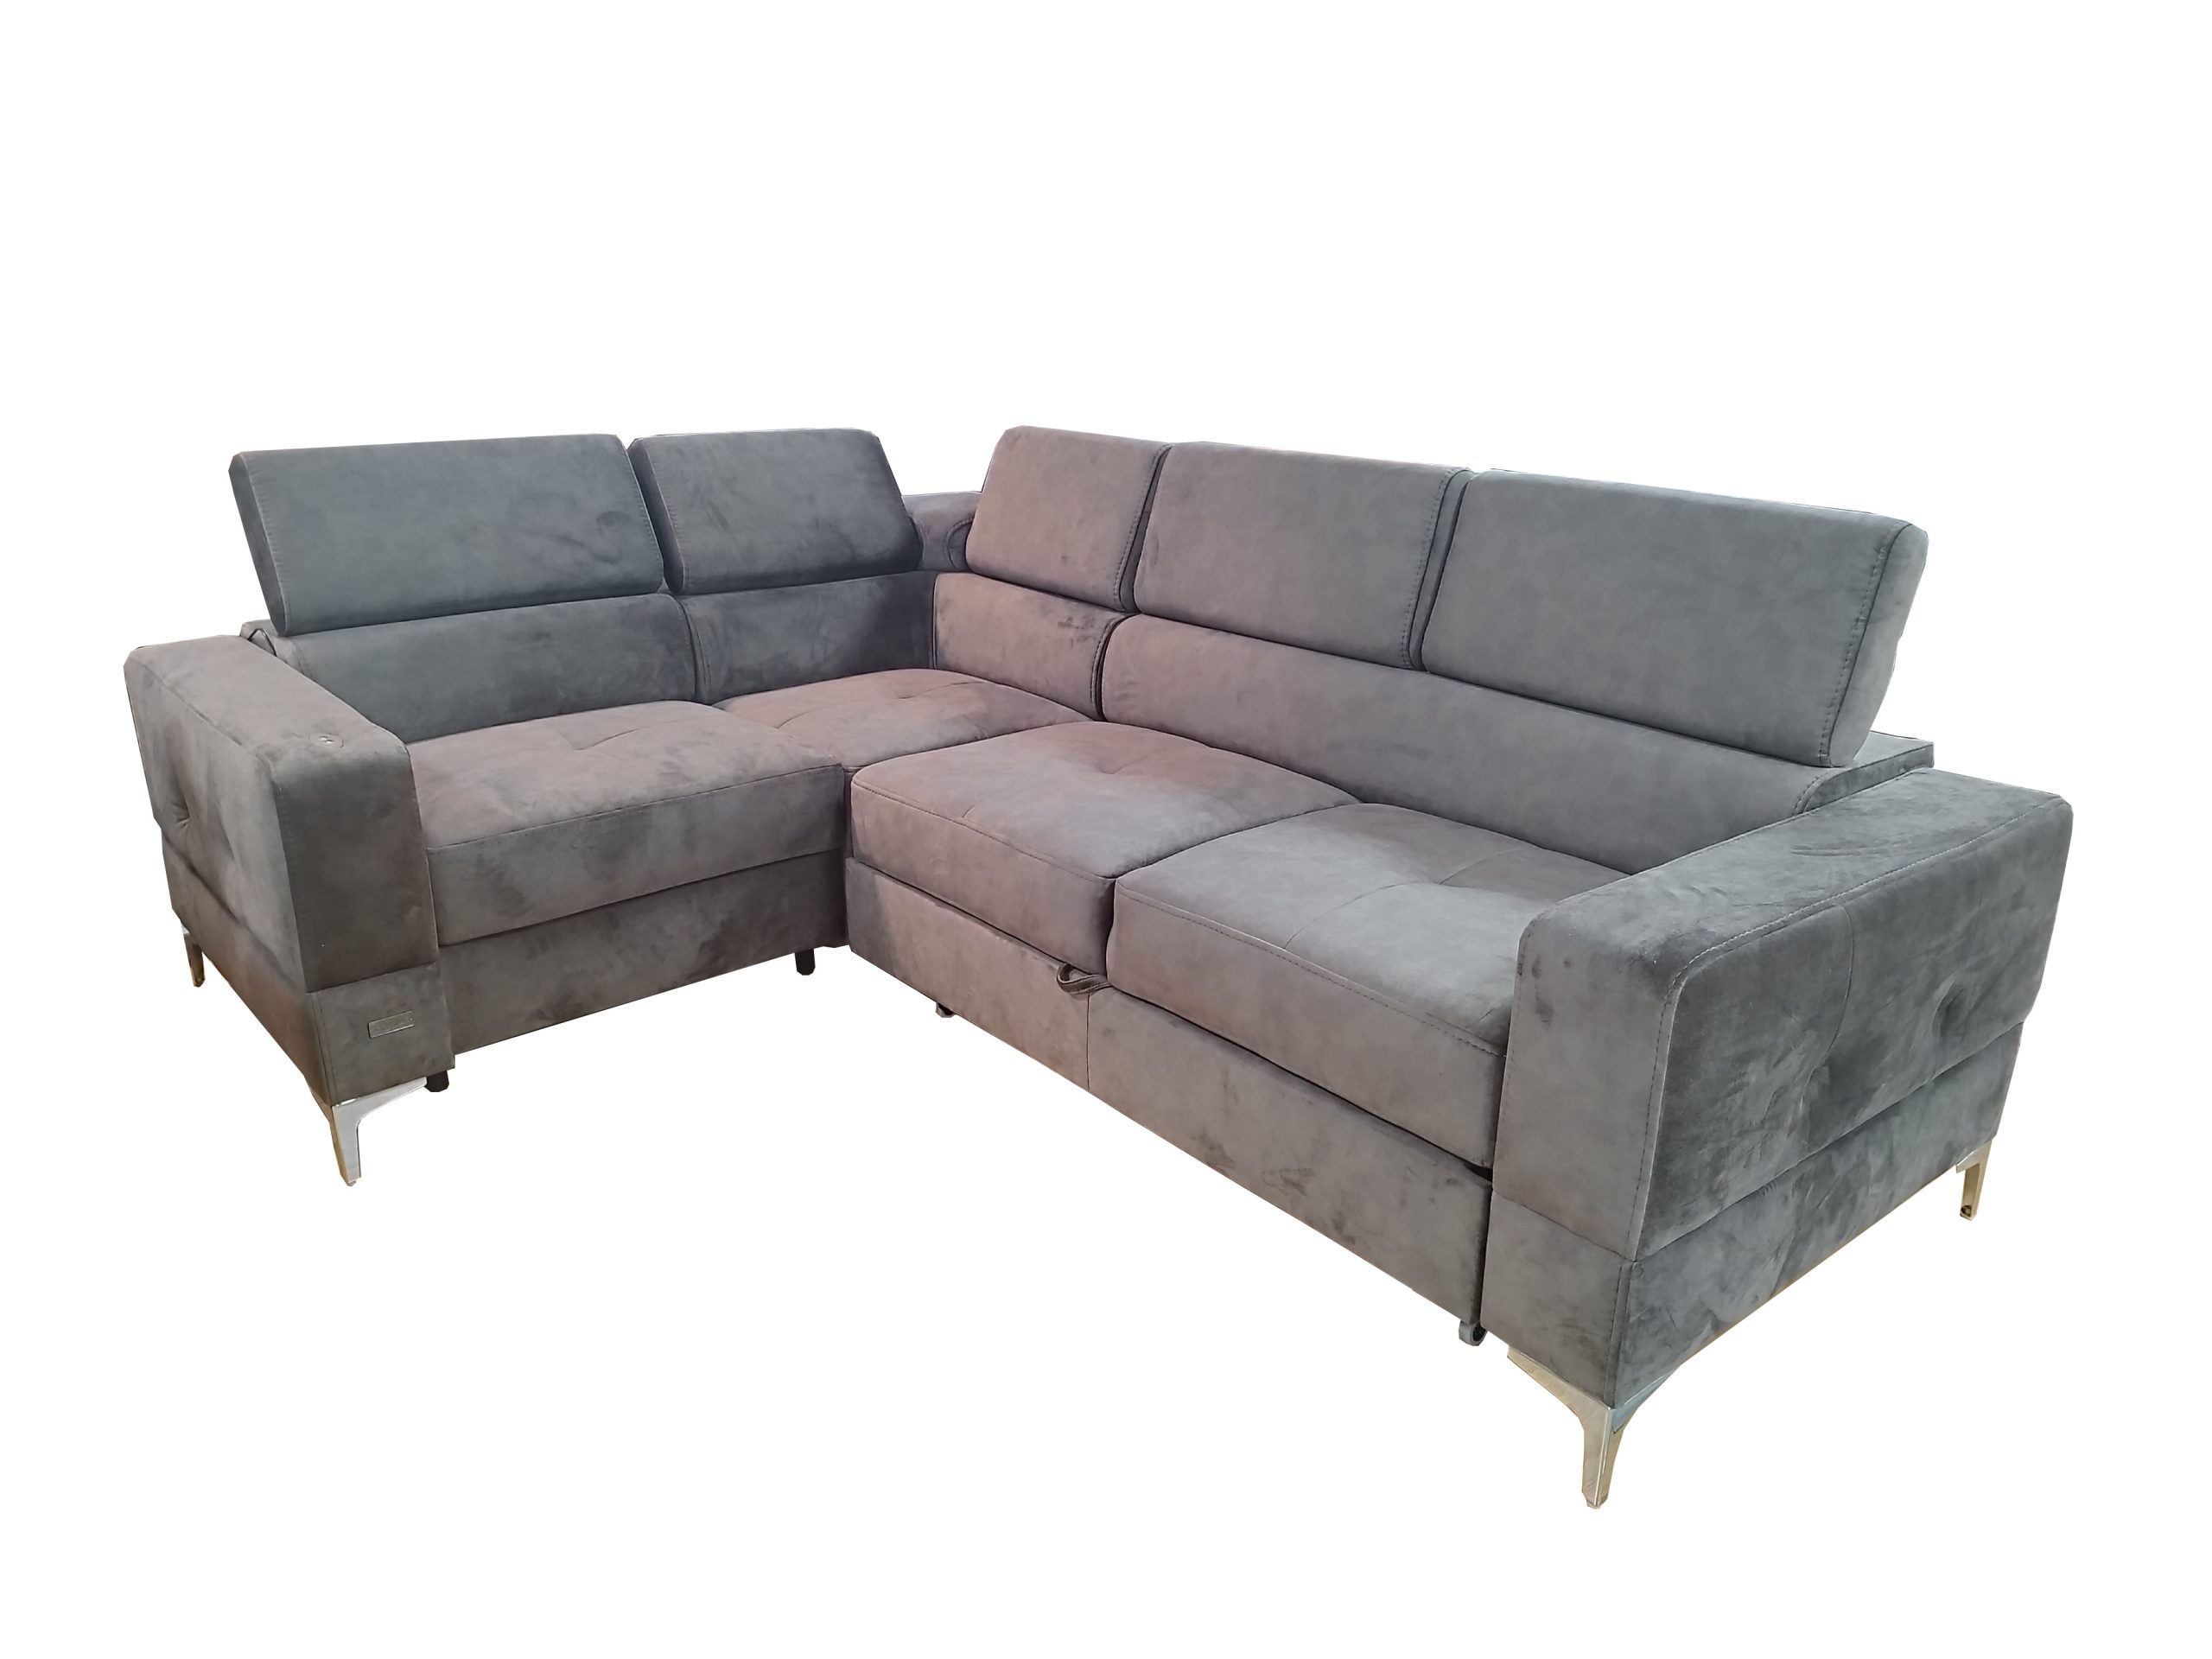 Stūra dīvāns ar relaksācijas funkciju "TOSCANIA RELAX" Kreis.